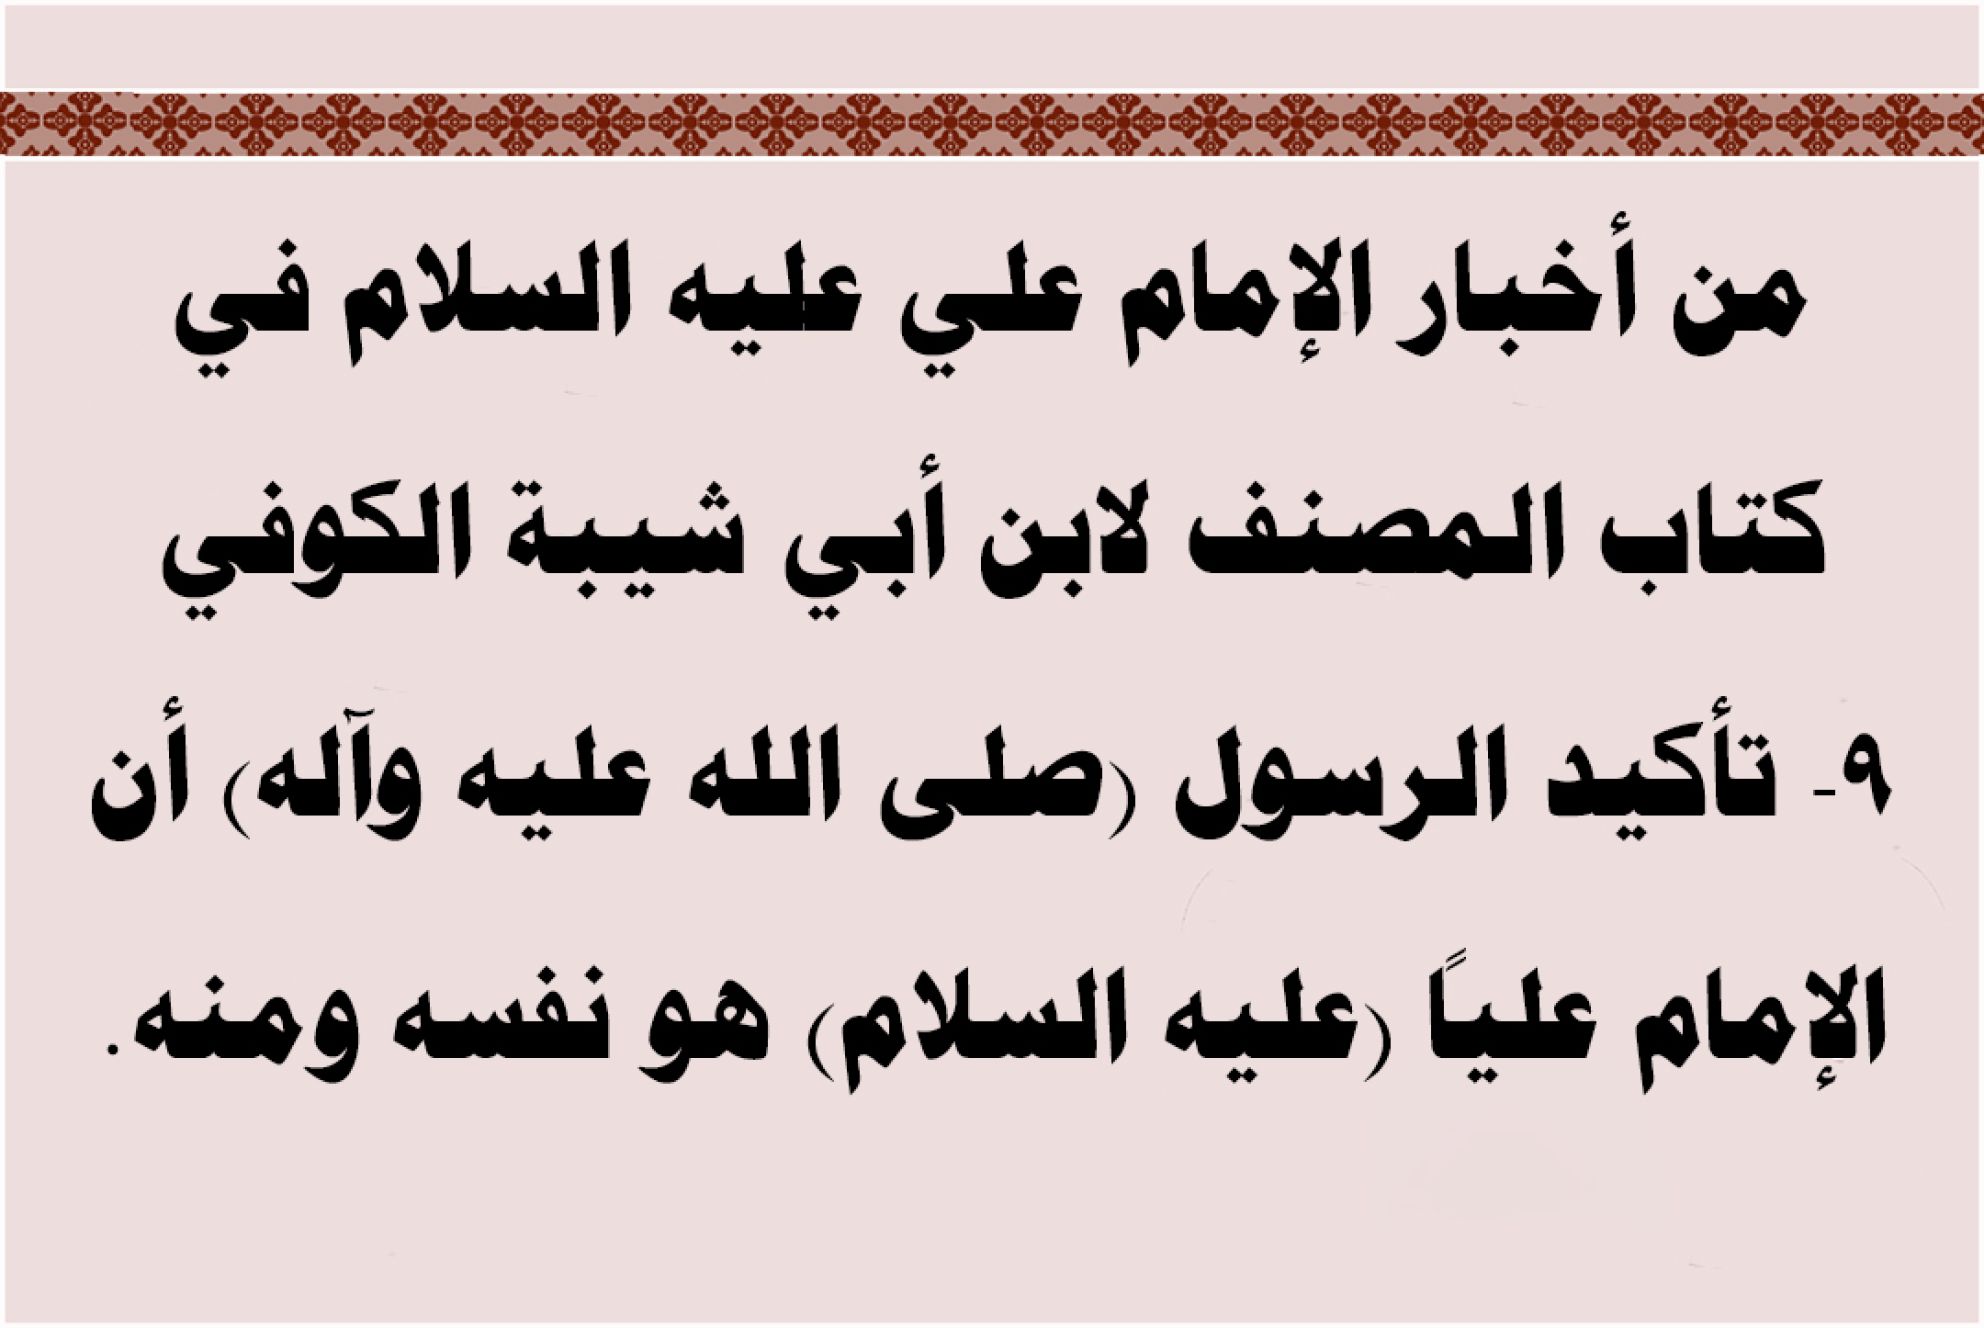 من أخبار الإمام علي عليه السلام في كتاب المصنف لابن أبي شيبة الكوفي 9- تأكيد الرسول (صلى الله عليه وآله) أن الإمام علياً (عليه السلام) هو نفسه ومنه.